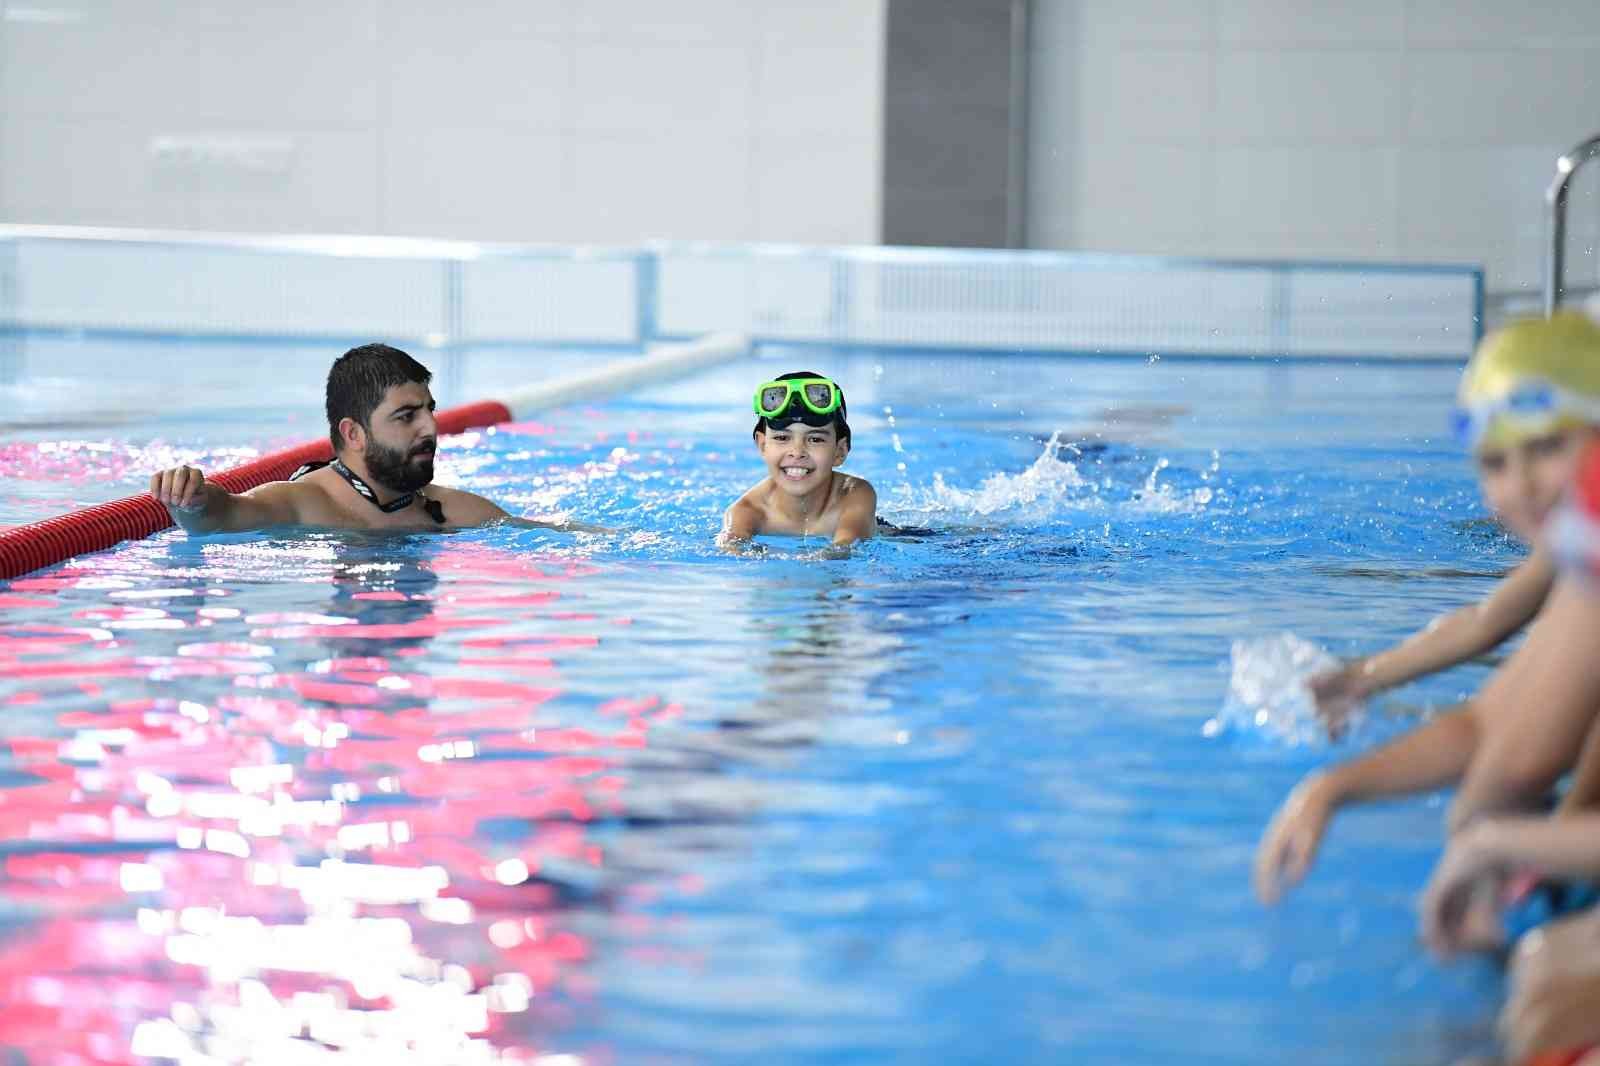 Altındağ Belediyesinde ücretsiz yüzme kursları başlıyor #ankara